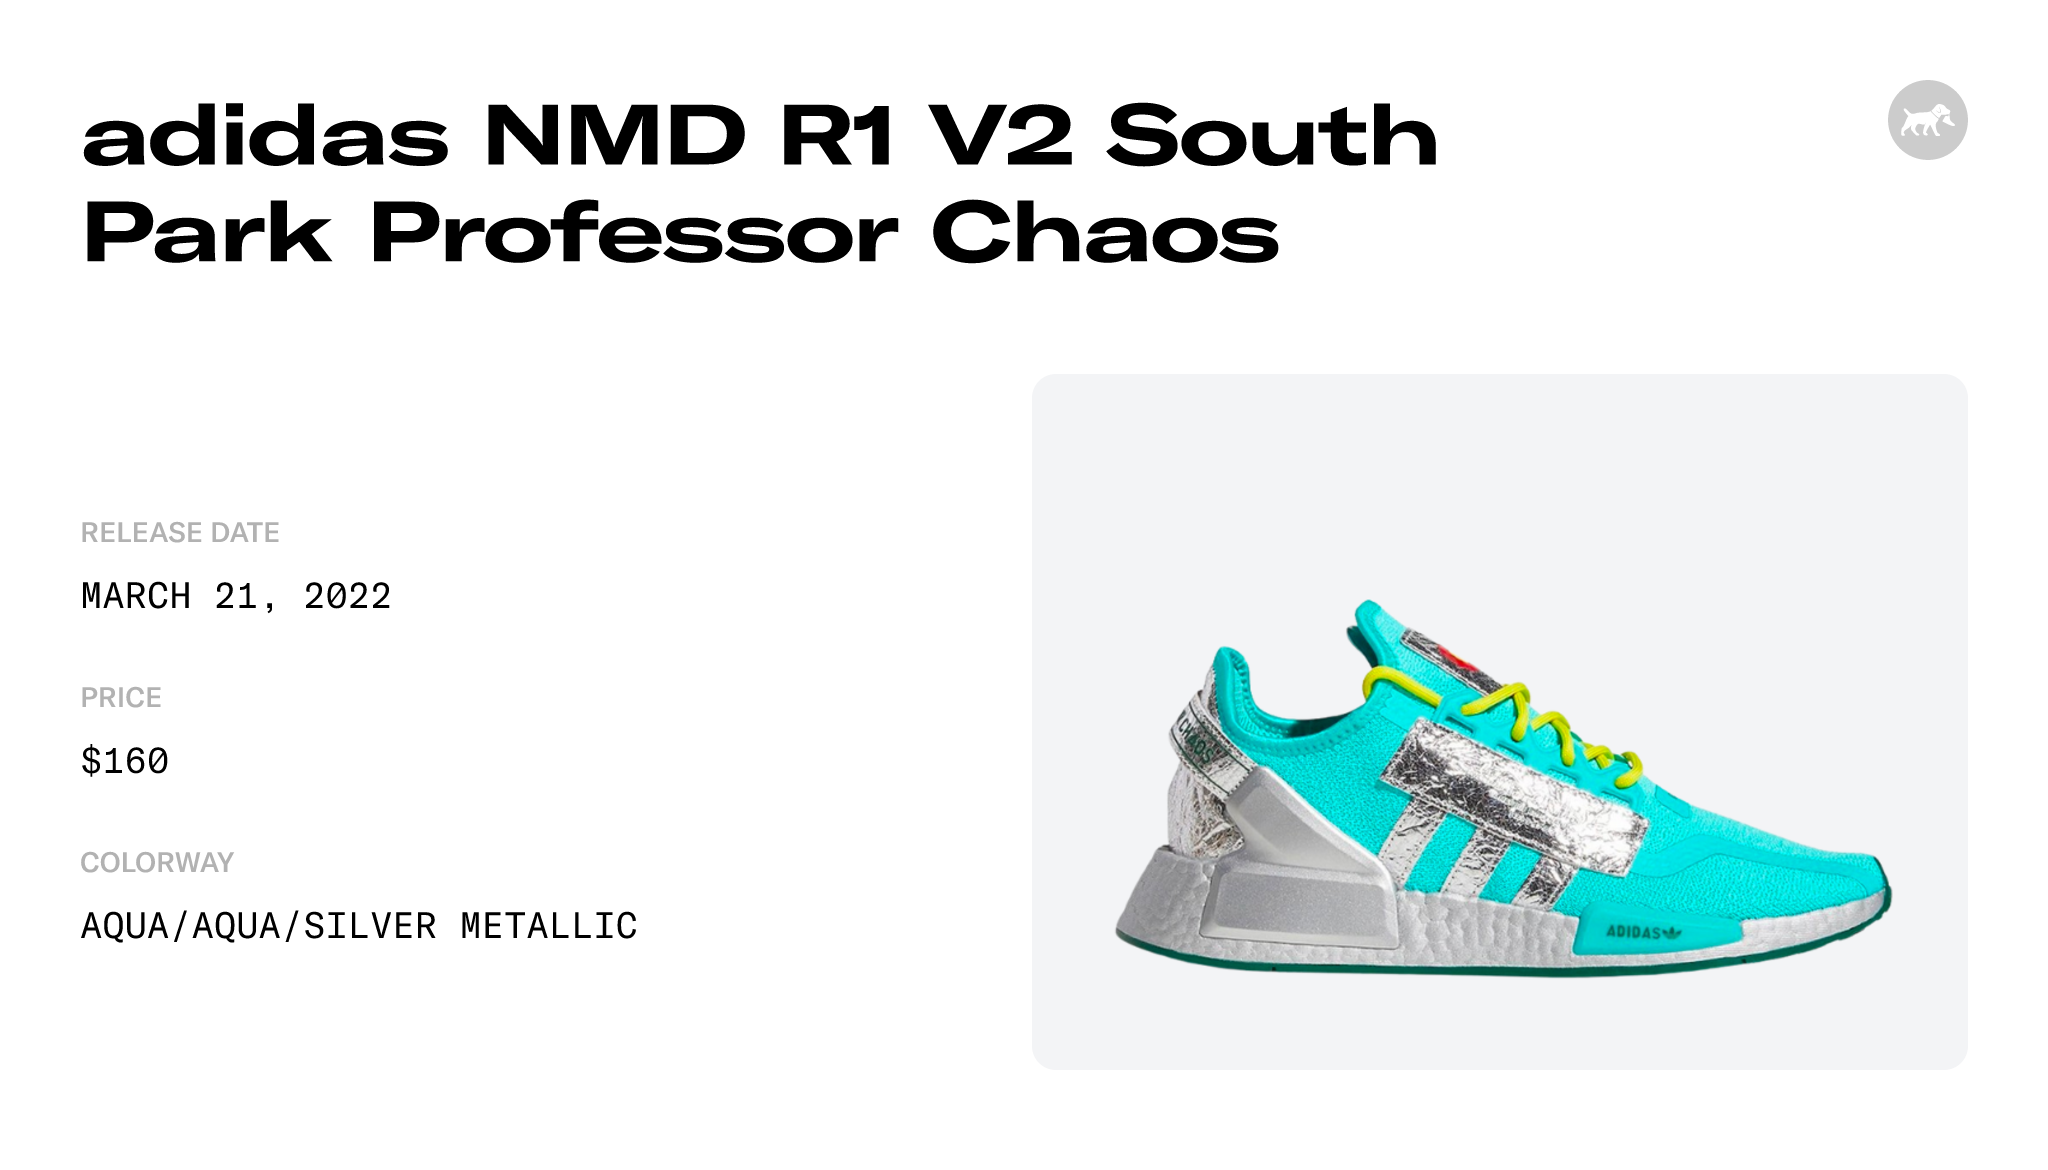 South Park x adidas NMD_R1 V2 Professor Chaos Release